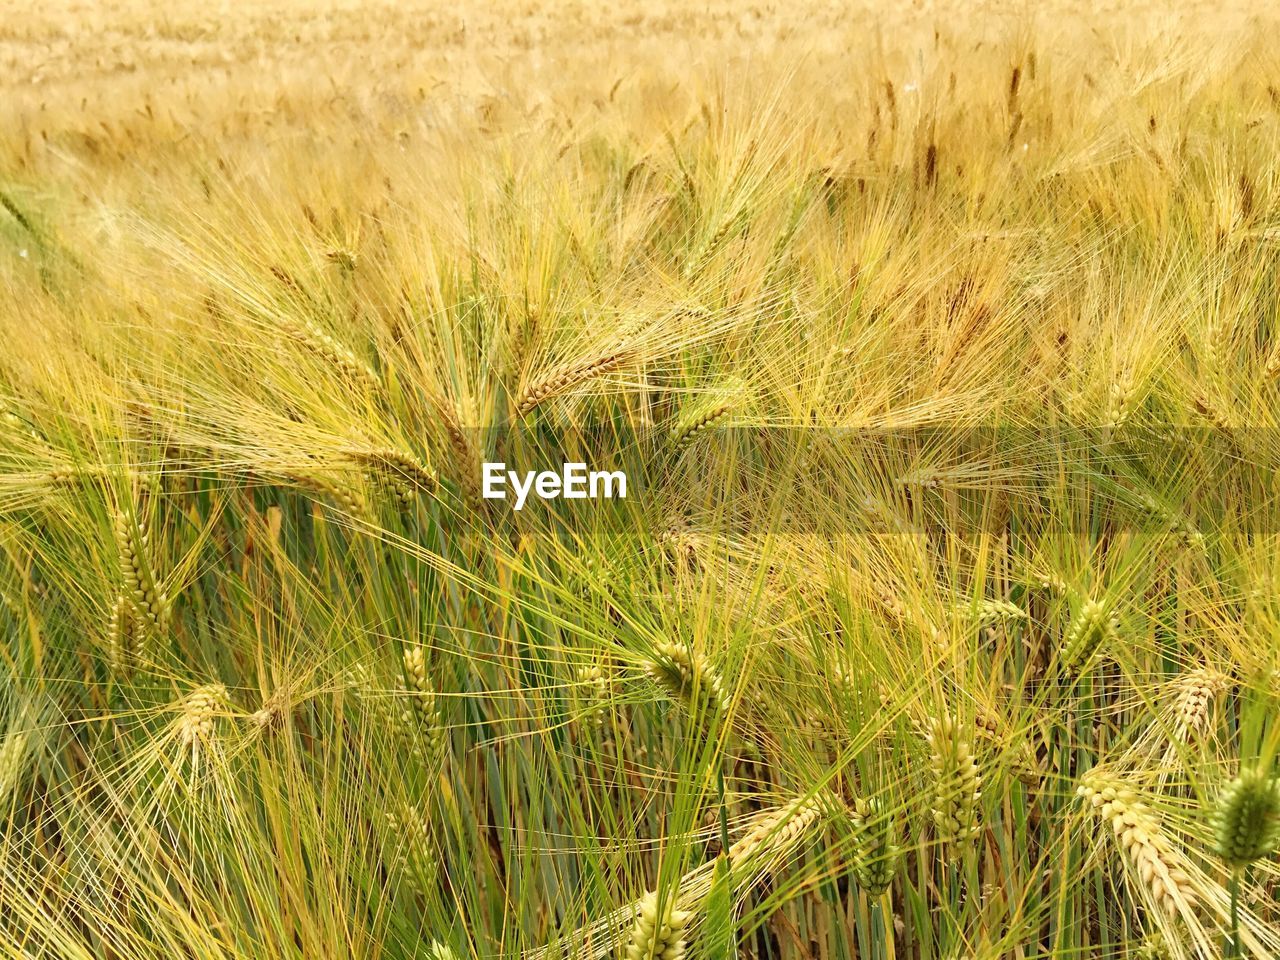 Full frame of wheat field